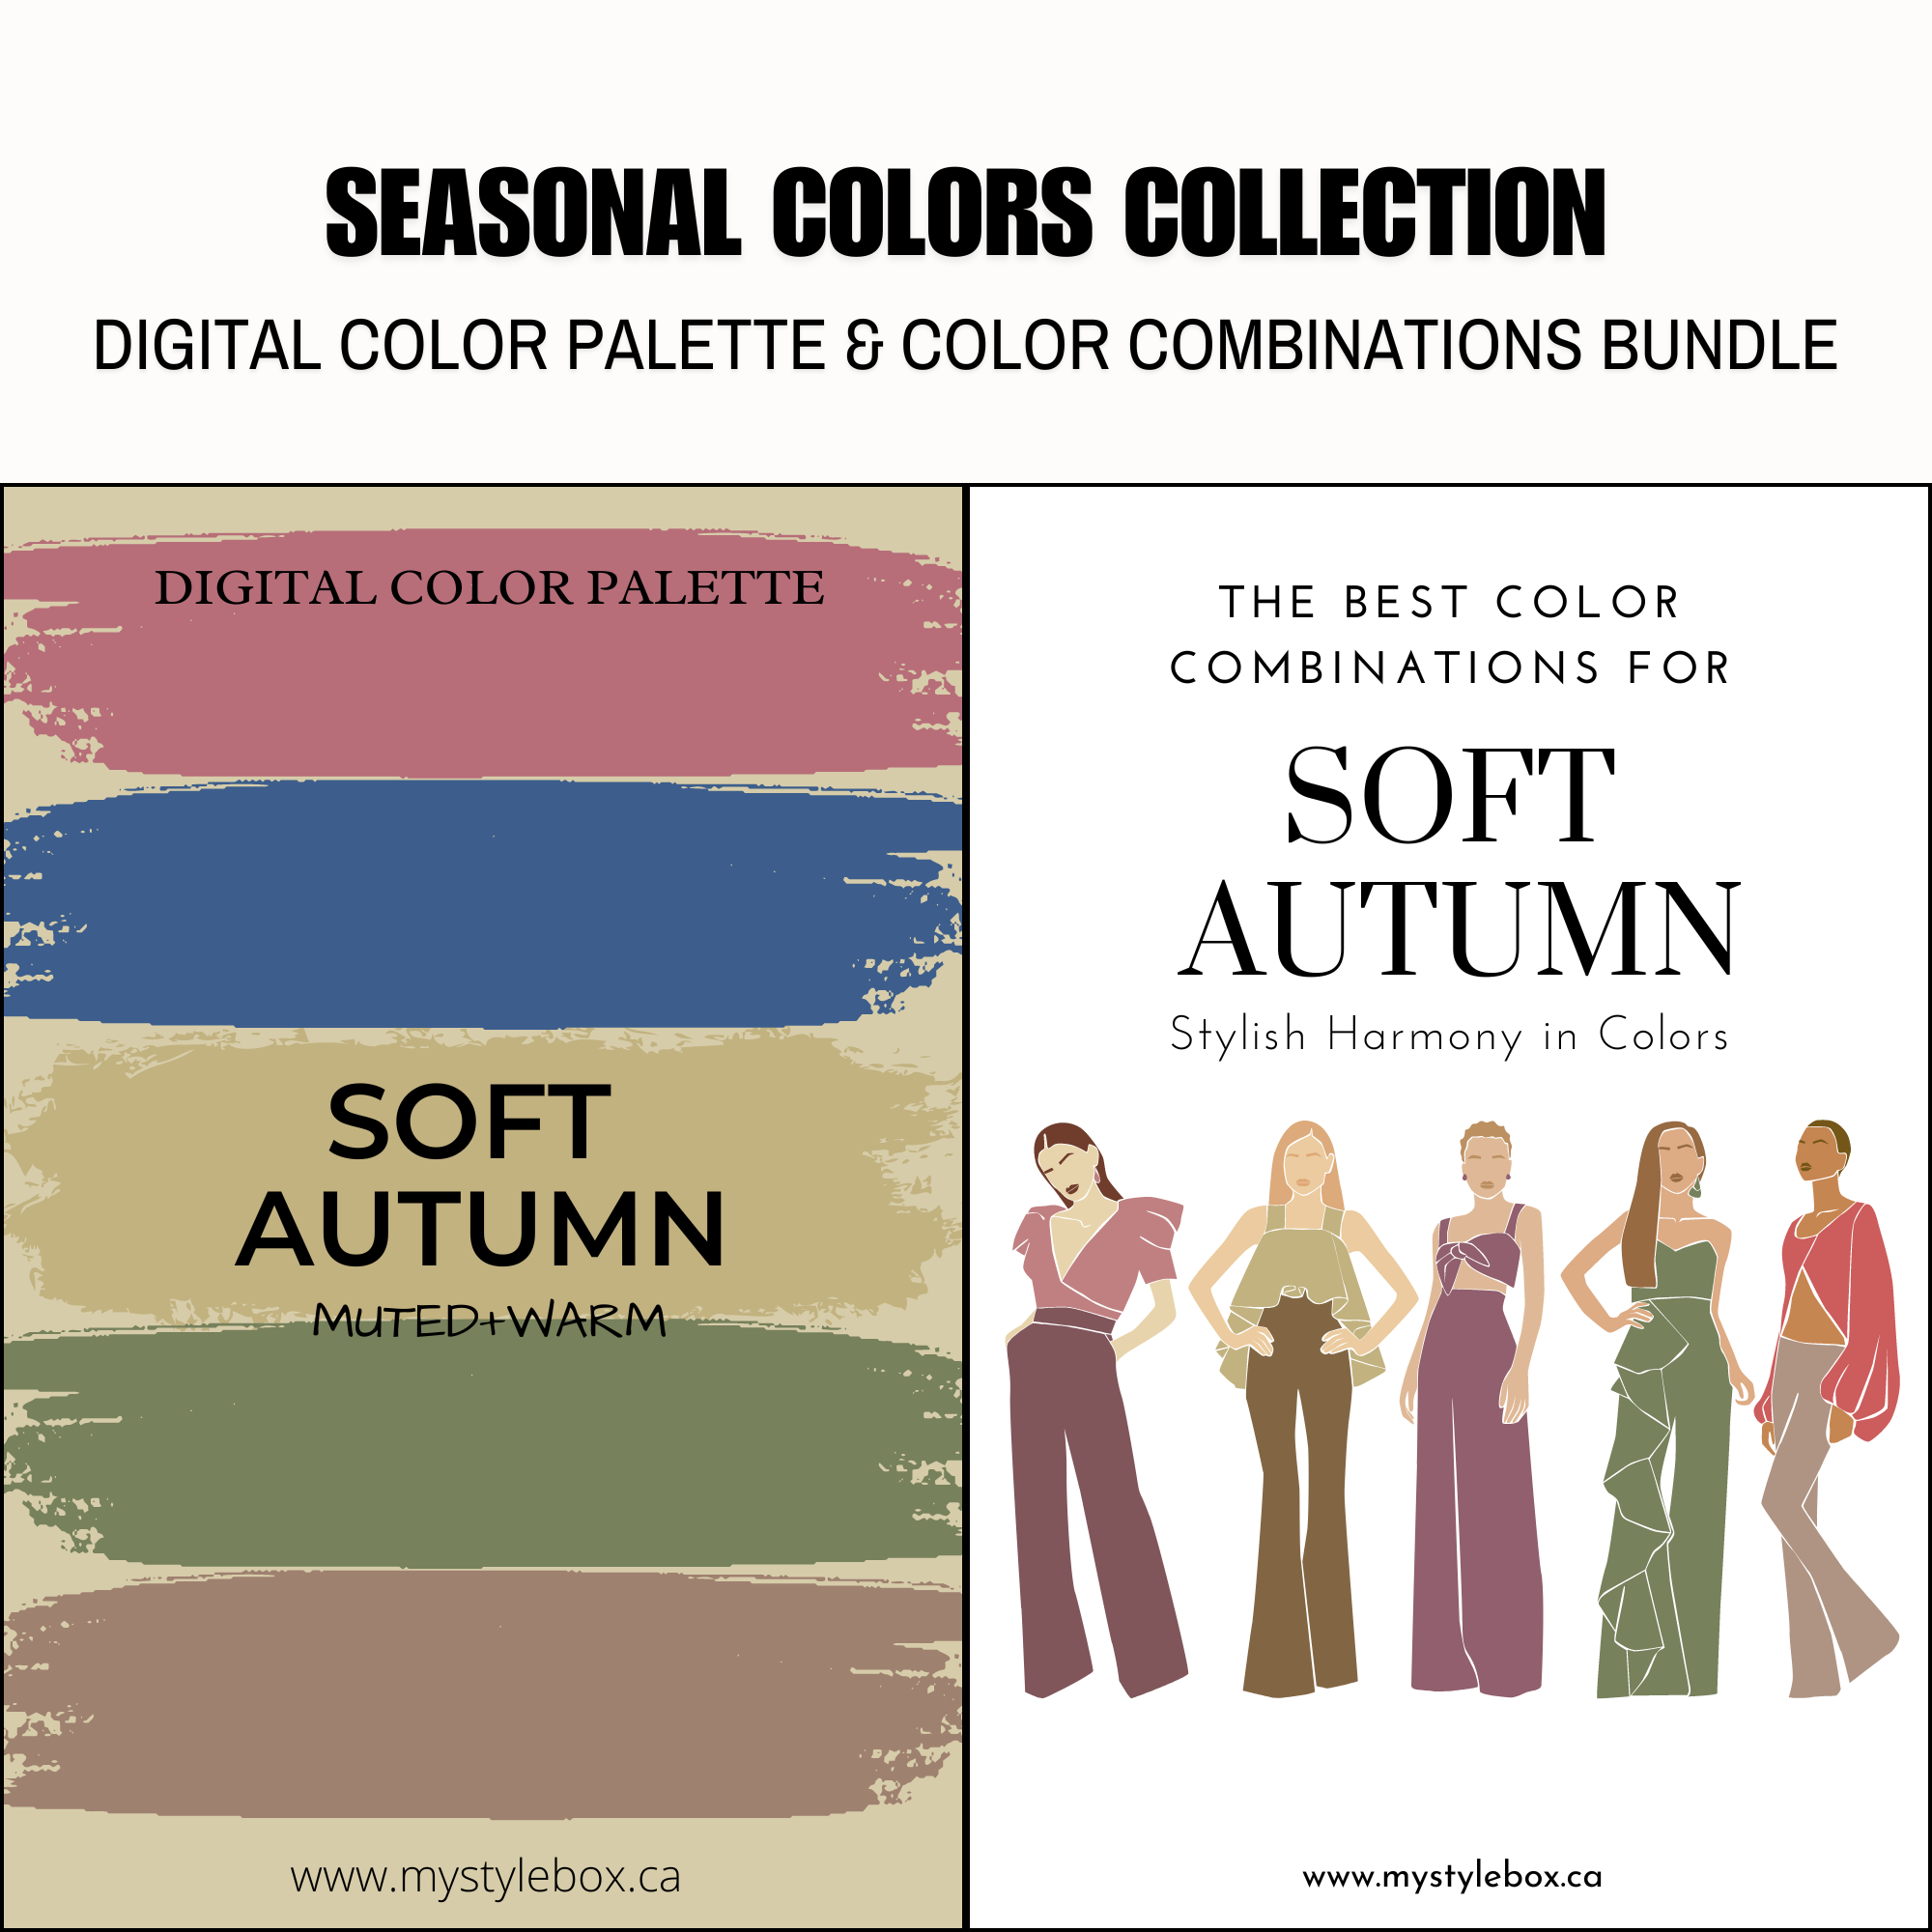 Soft Autumn Season Digital Color Palette and Color Combinations Bundle